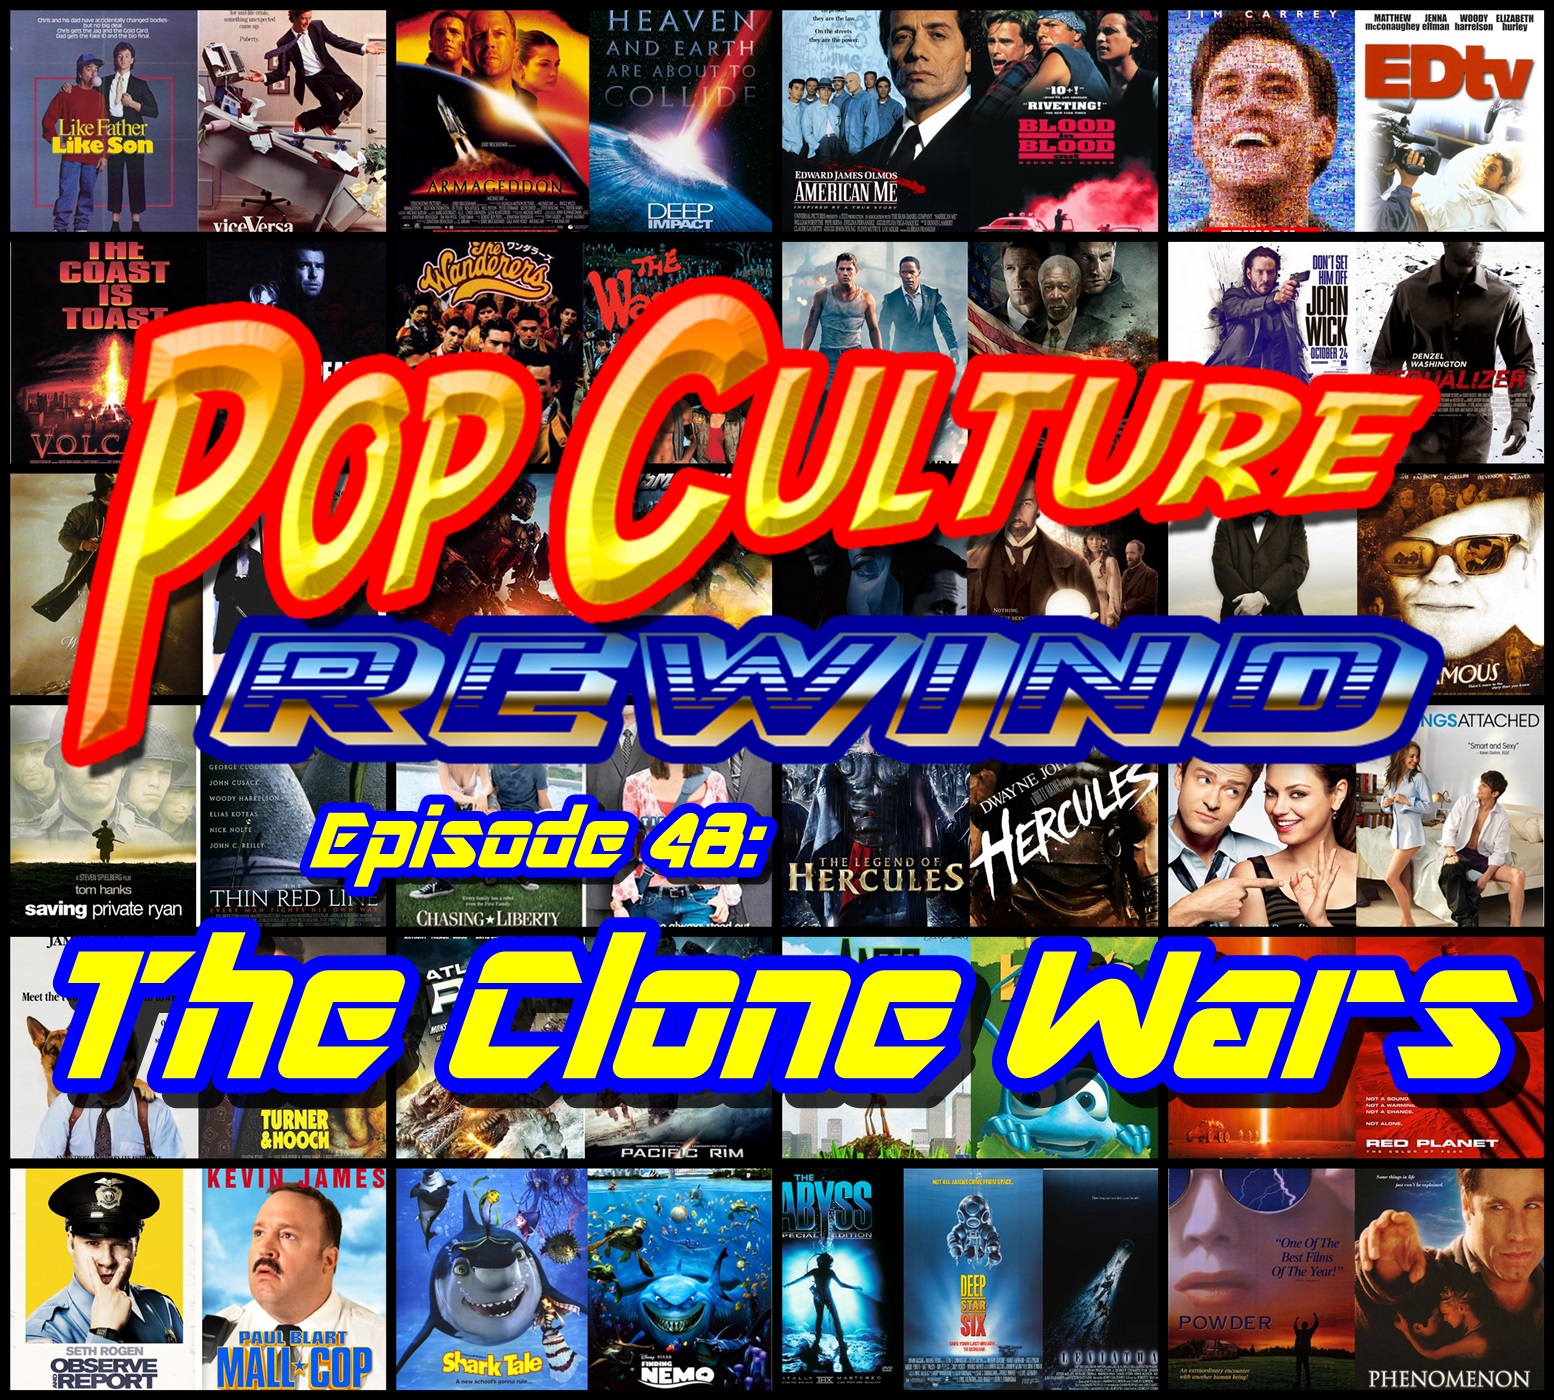 PCR #48 - The Clone Wars